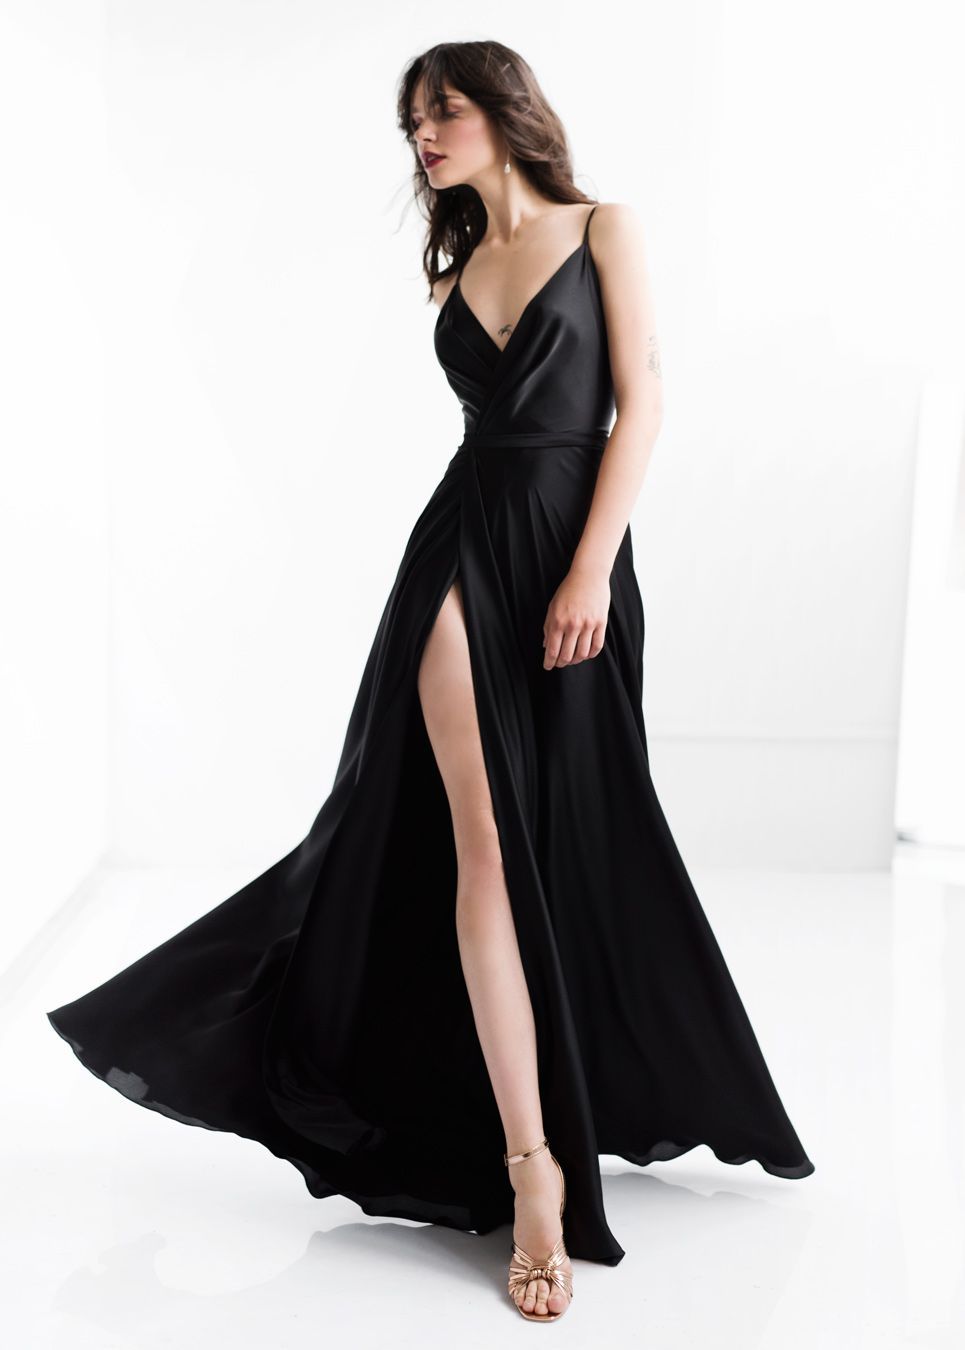 Чёрное платье в пол с разрезом купить в Москве